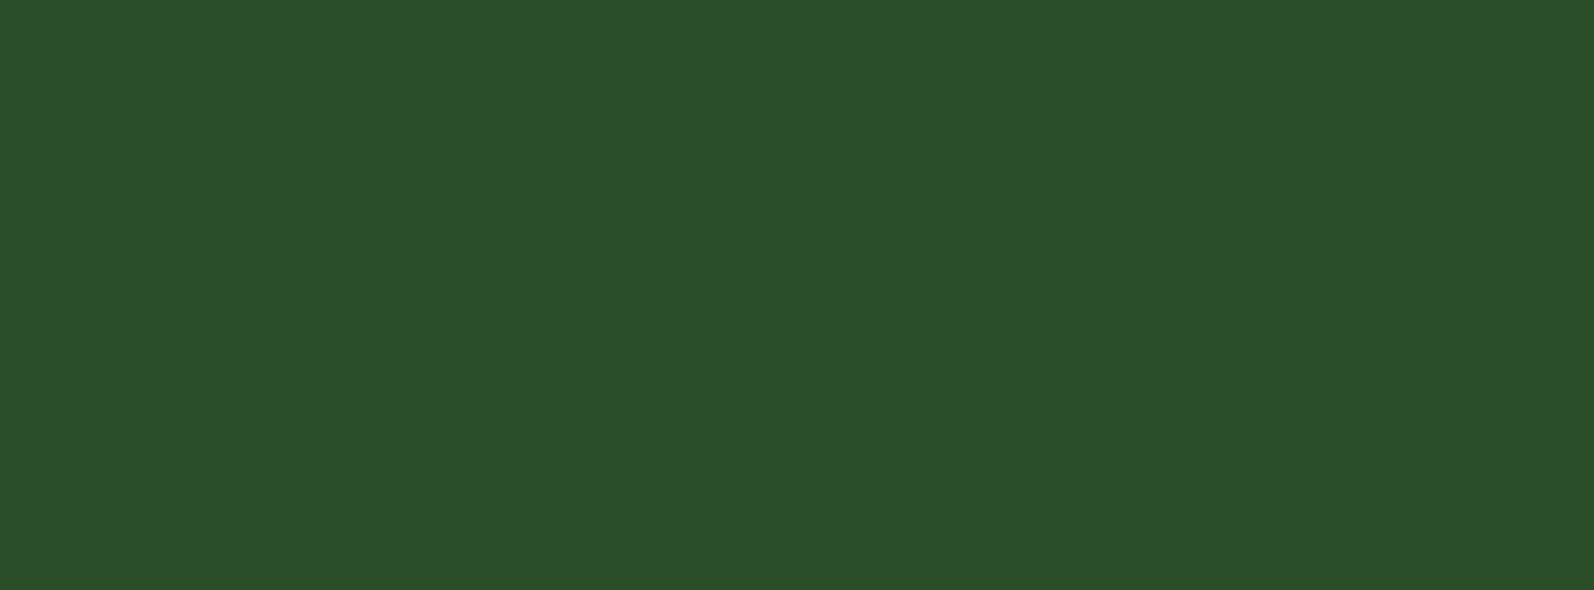 6400 - Çimen Yeşili